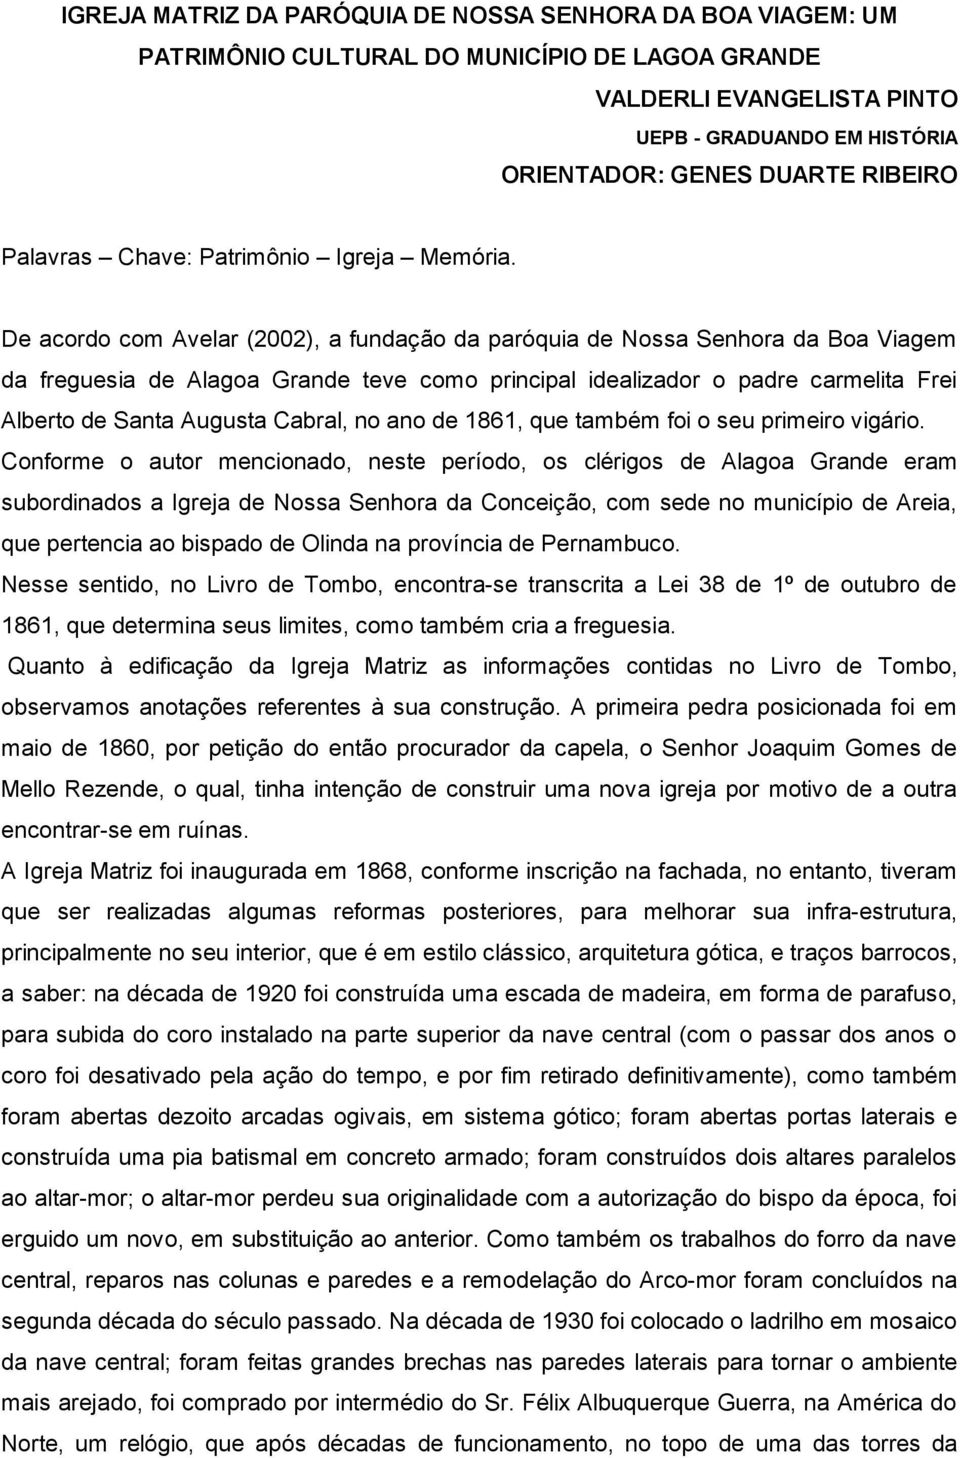 De acordo com Avelar (2002), a fundação da paróquia de Nossa Senhora da Boa Viagem da freguesia de Alagoa Grande teve como principal idealizador o padre carmelita Frei Alberto de Santa Augusta